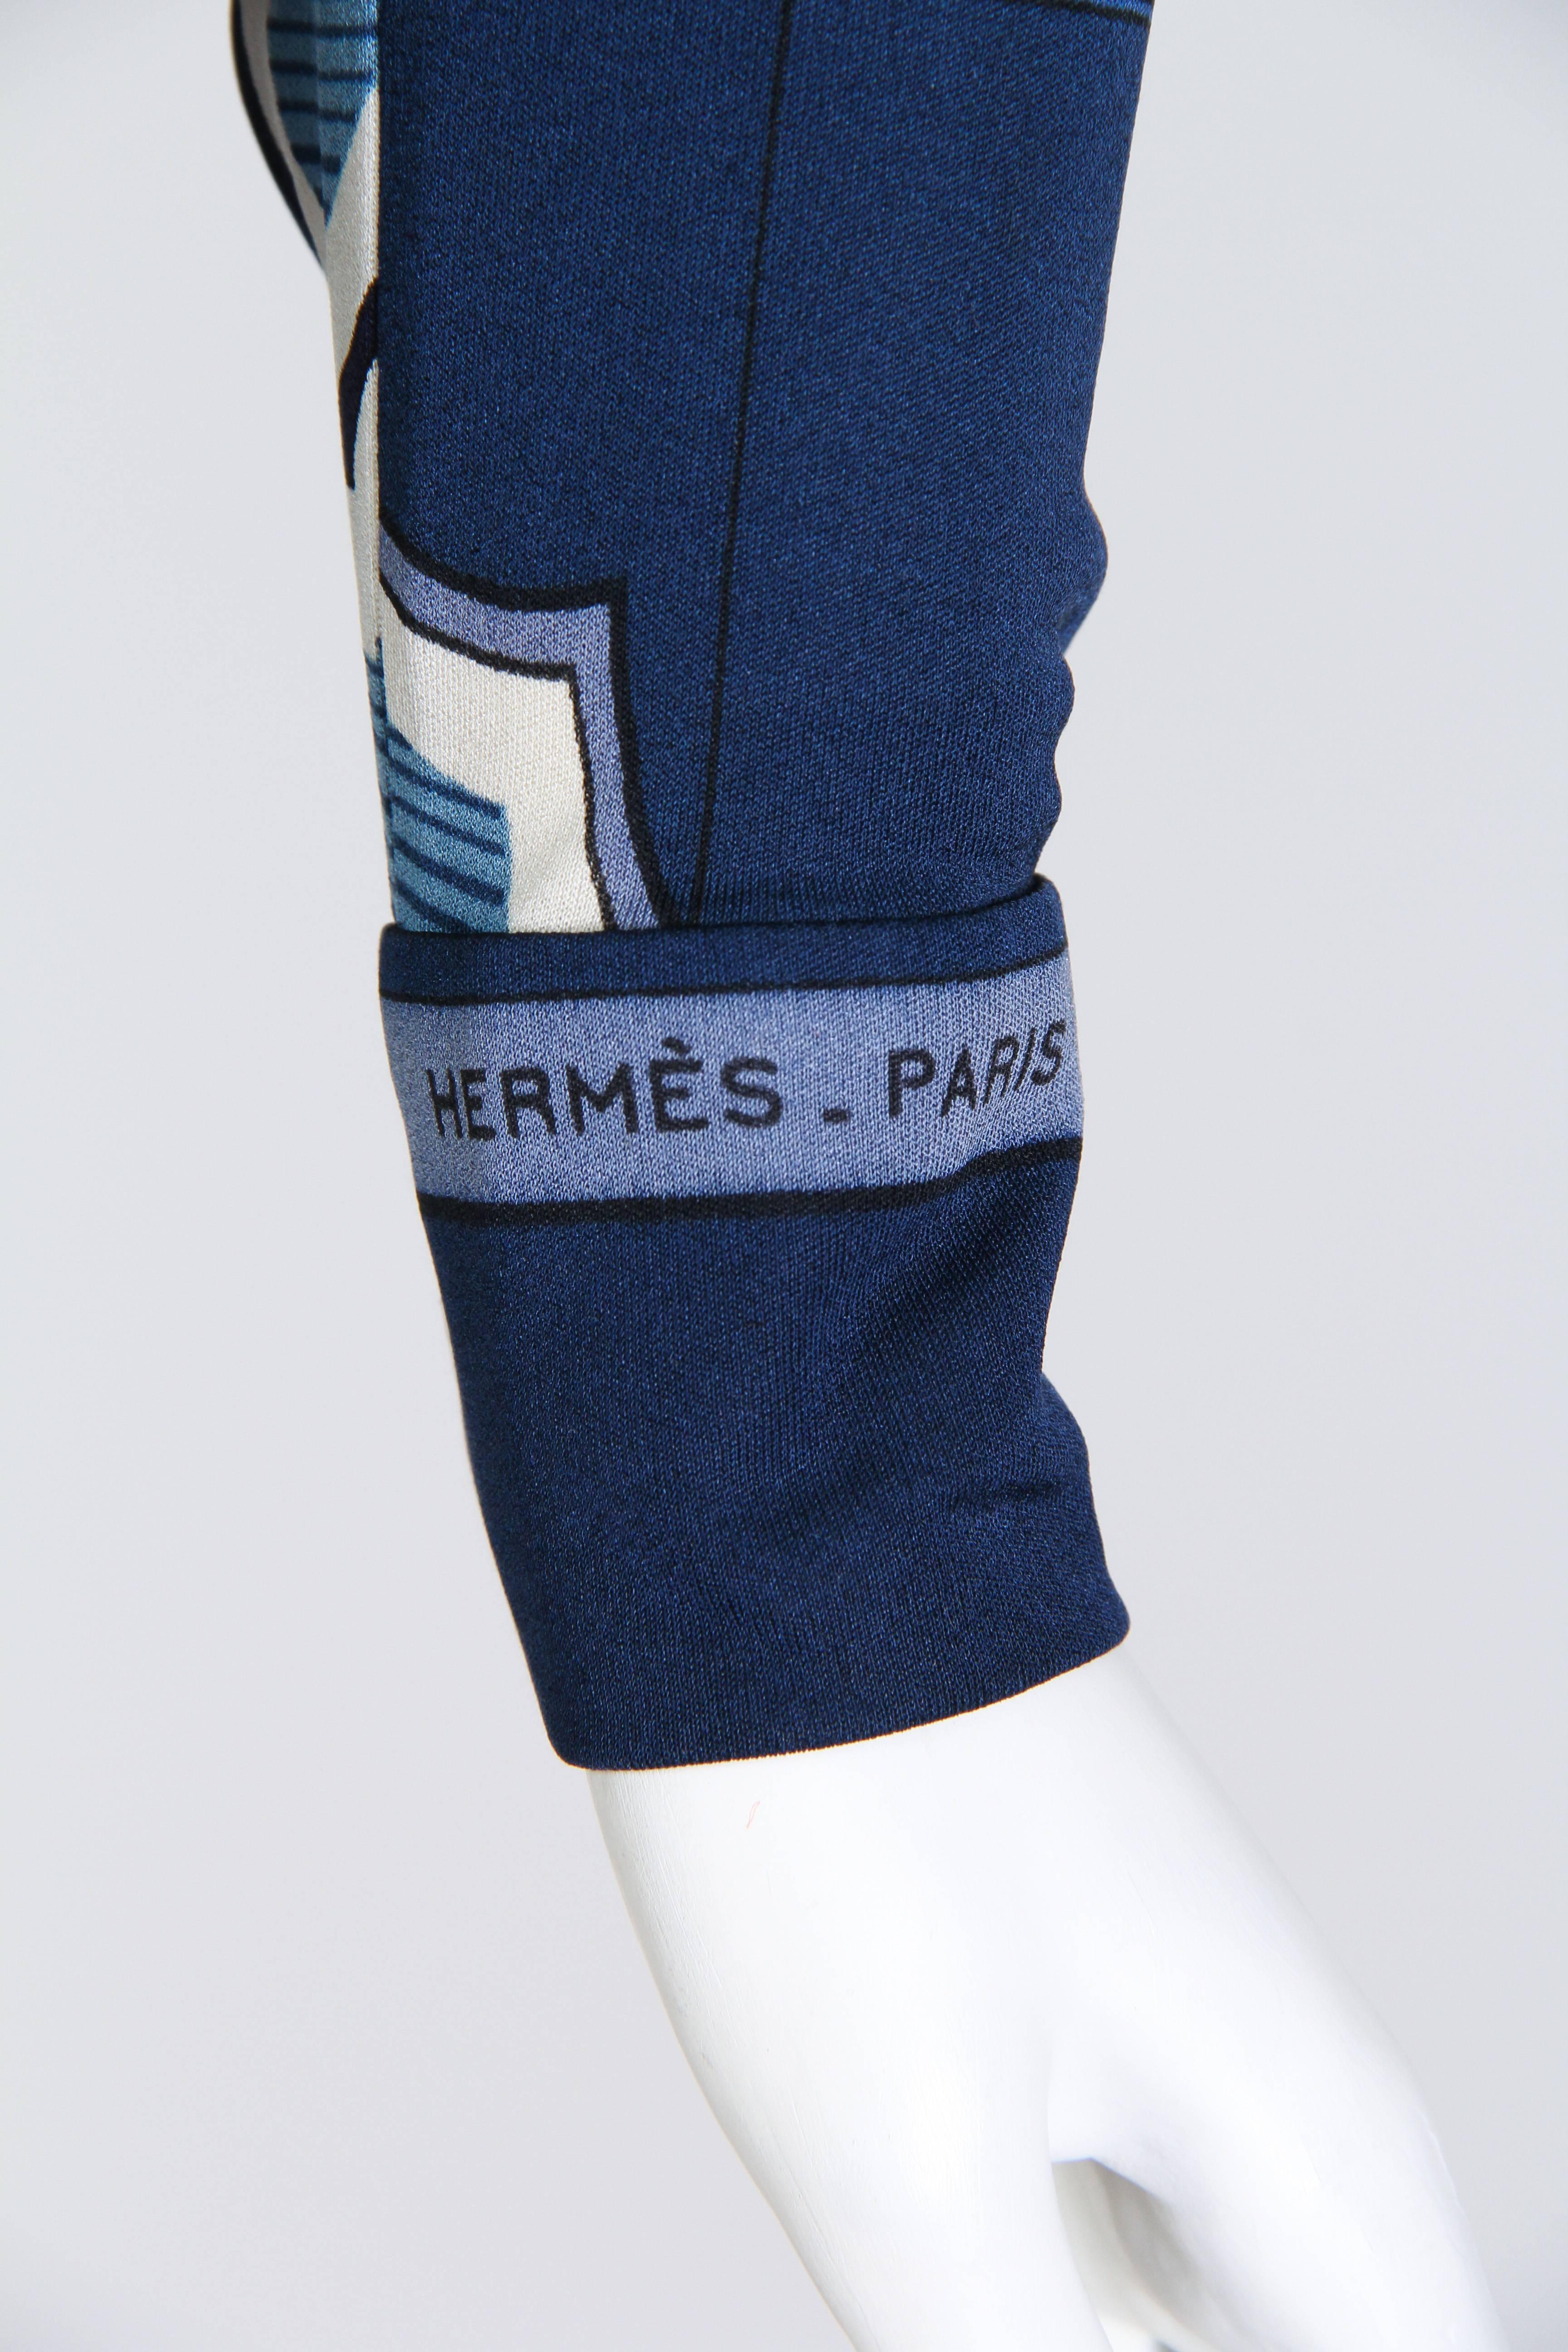 1970s Hermes Sport Silk Jersey Dress 1